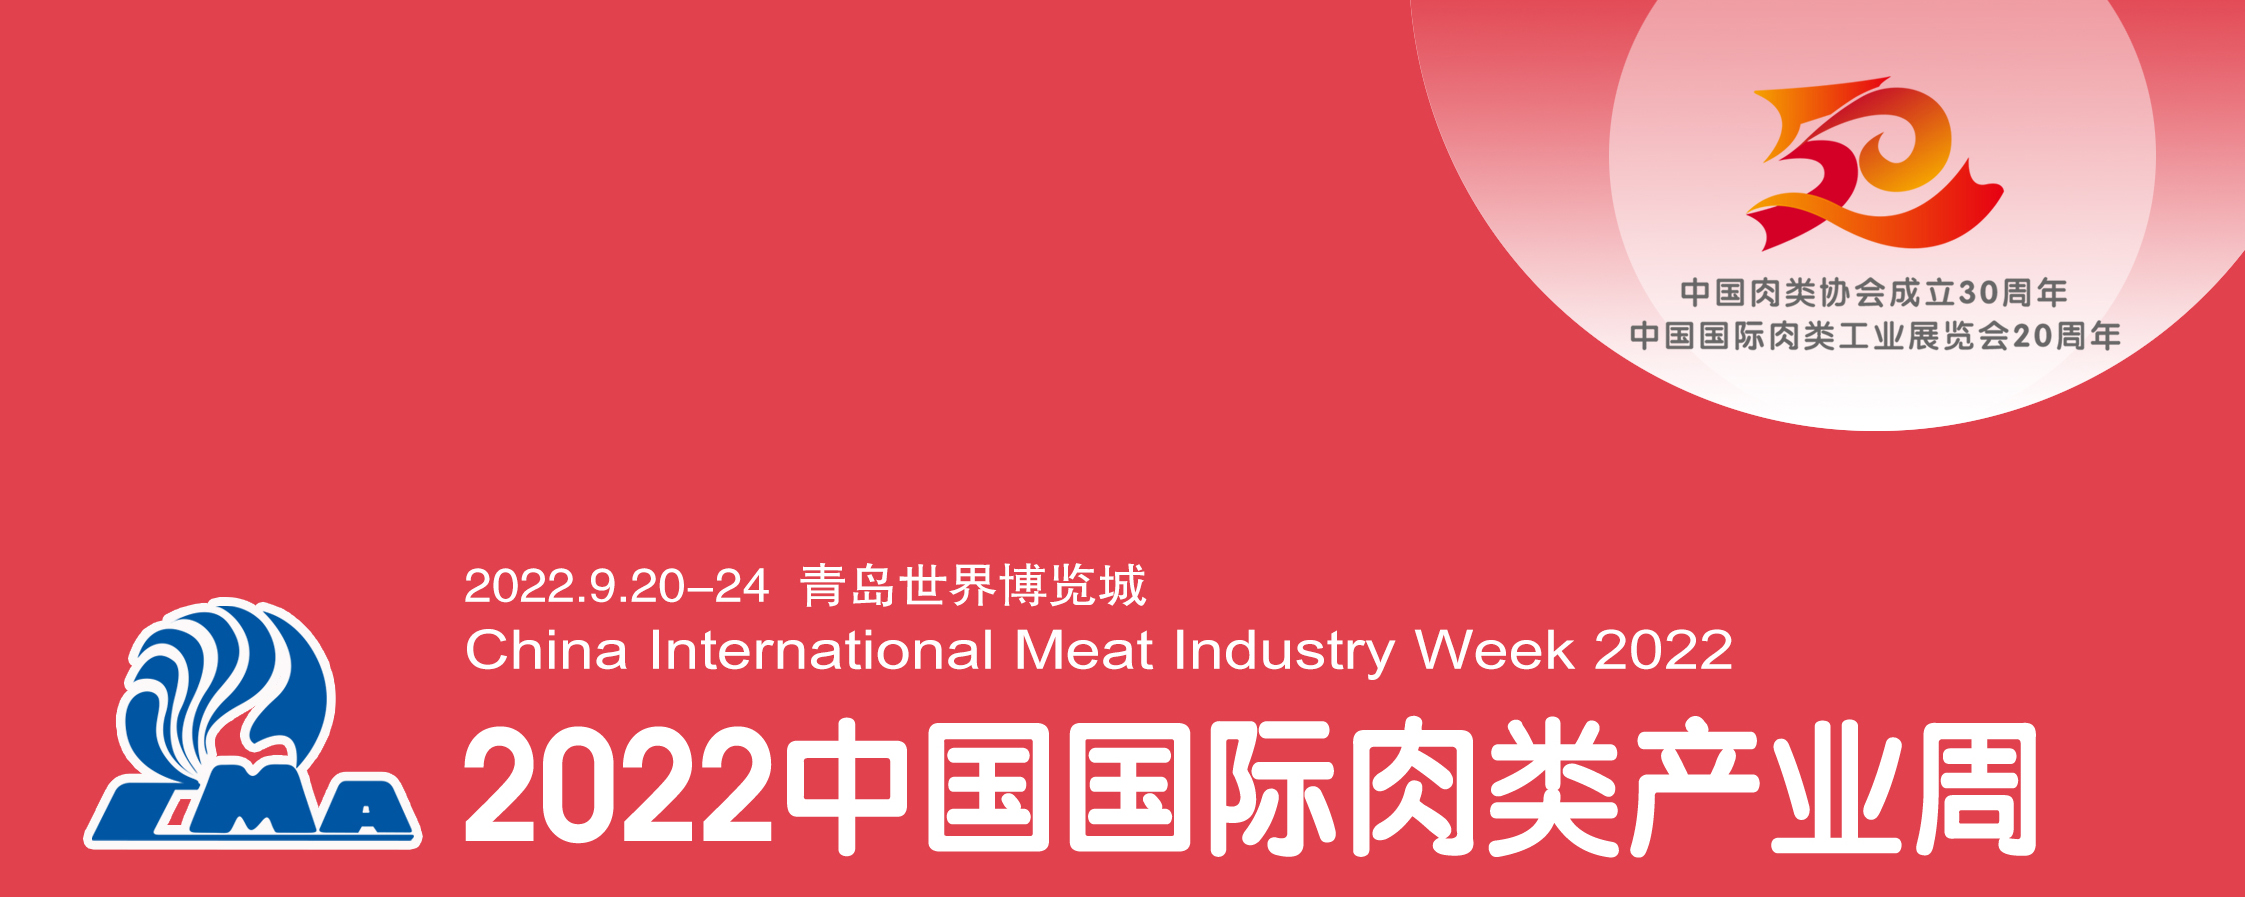 第二十届中国国际肉类工业产业周